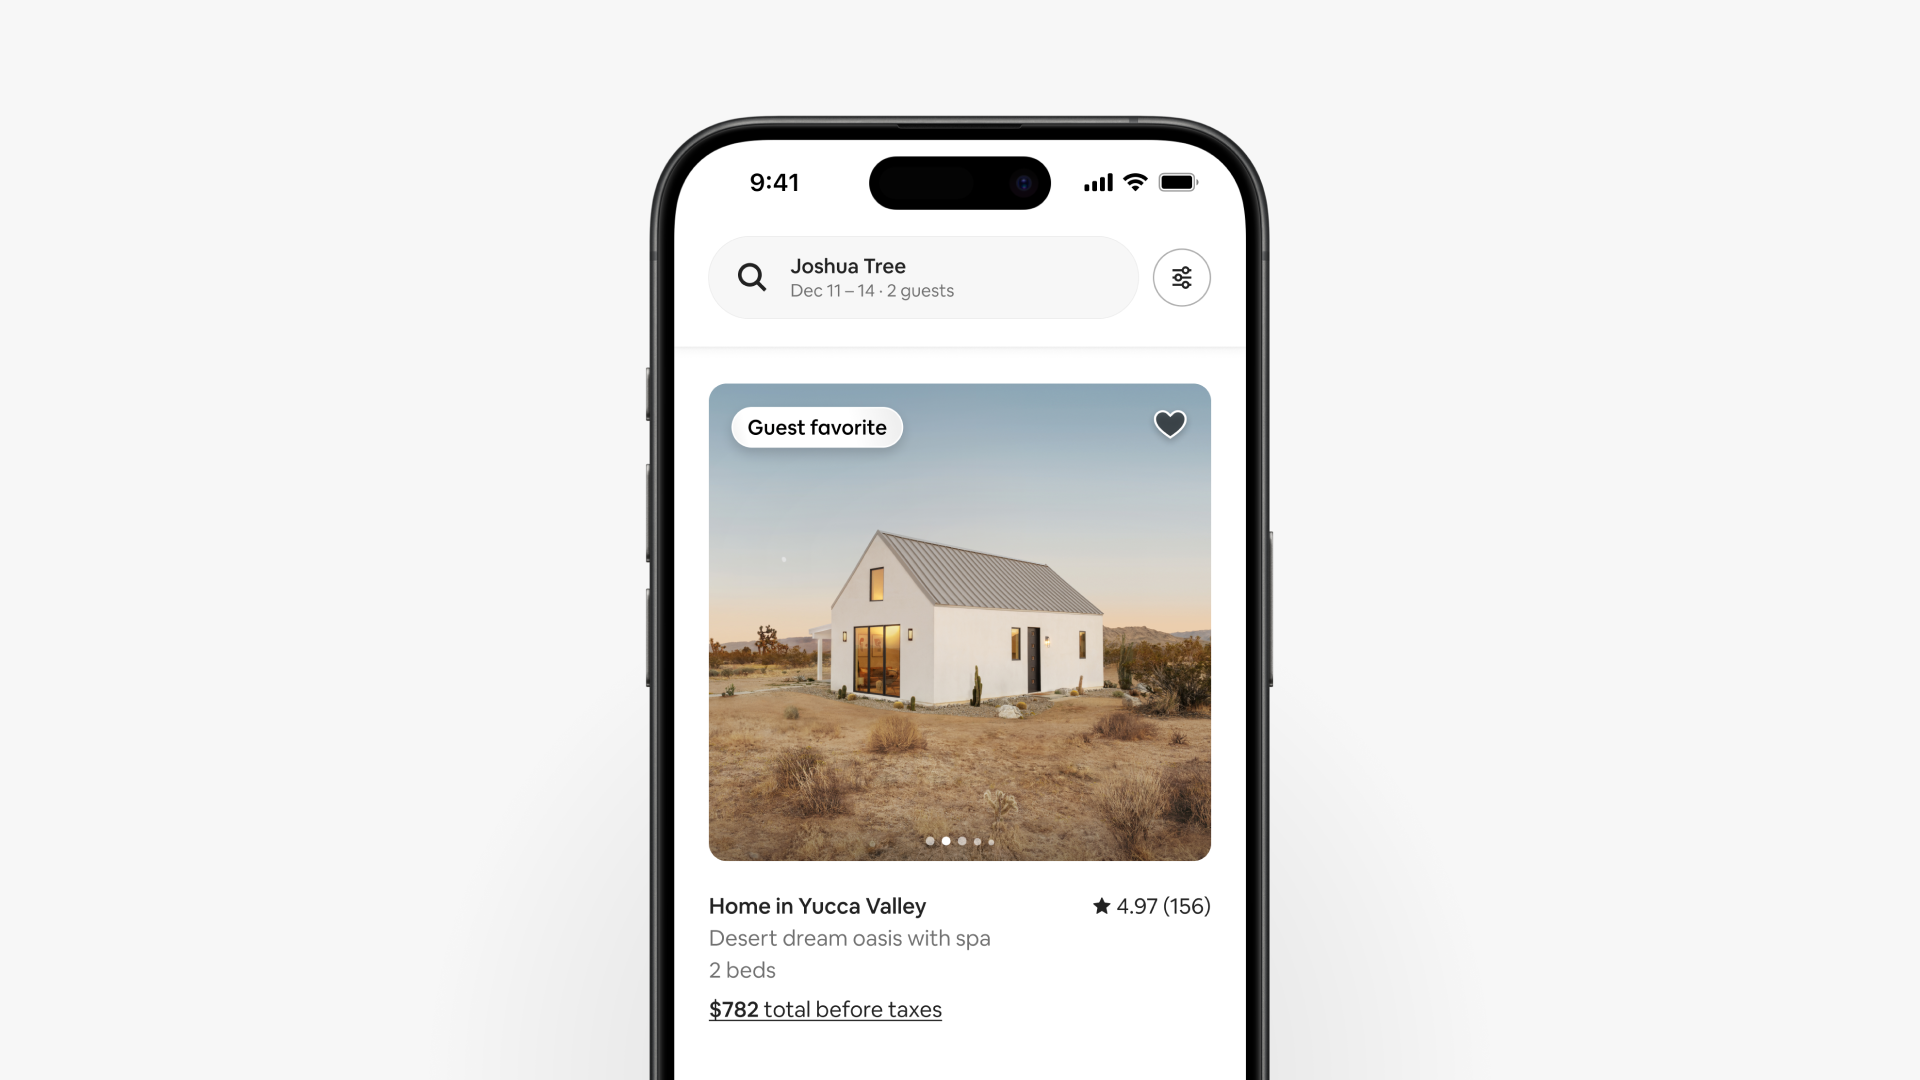 搜尋畫面顯示用戶正在搜尋加州約書亞樹的2人3晚住宿，並顯示一間標註為旅人至愛的旅居。